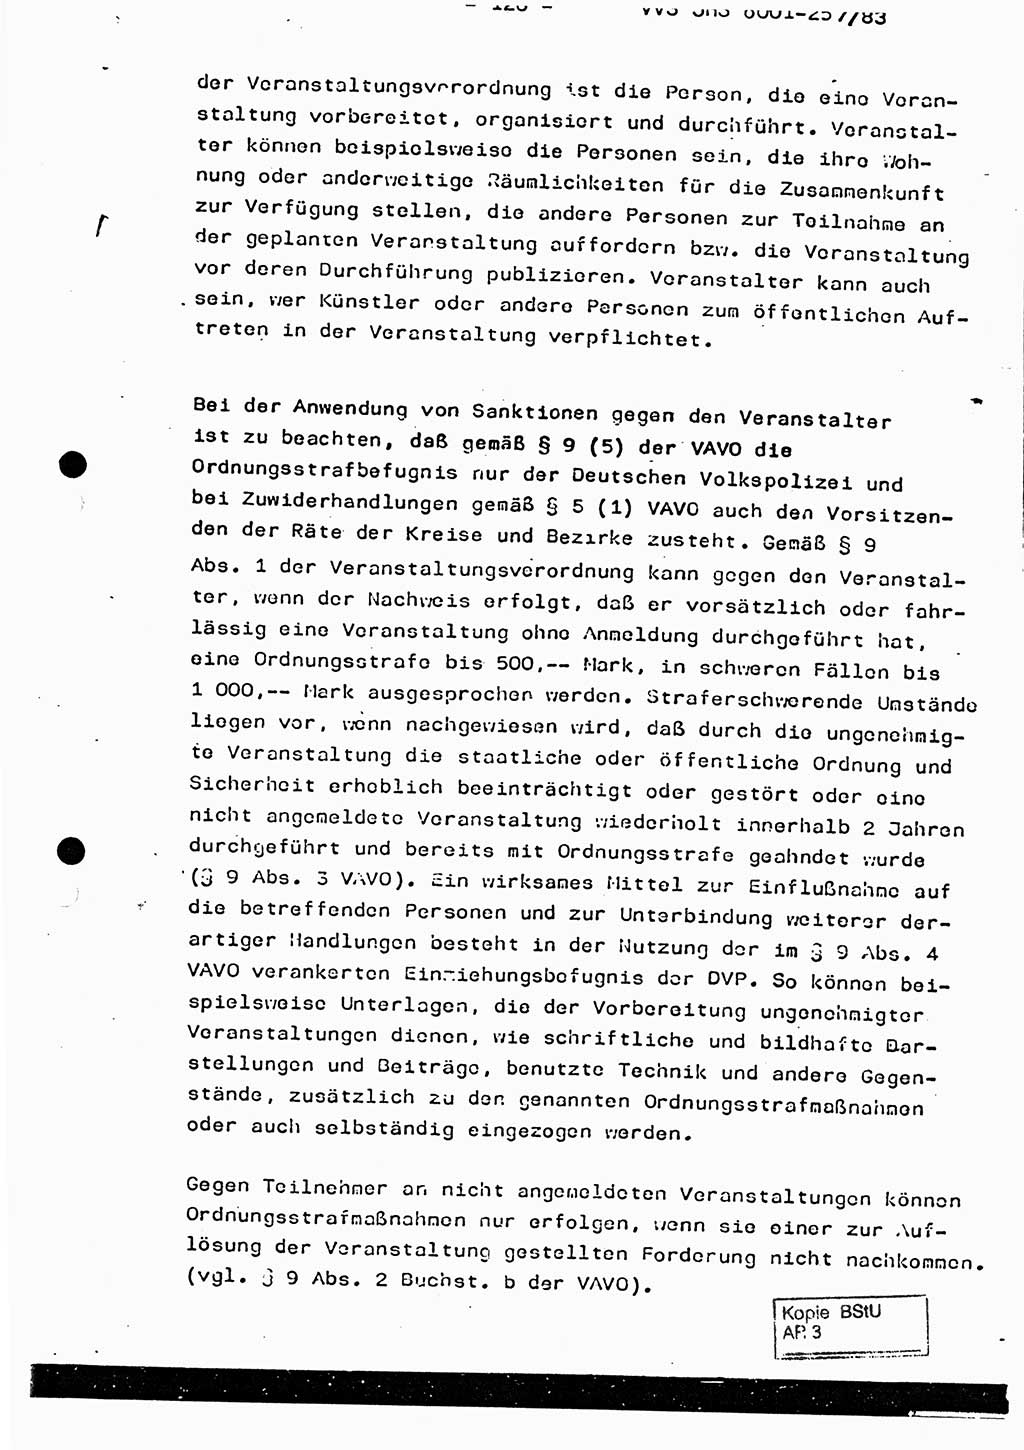 Dissertation, Oberst Helmut Lubas (BV Mdg.), Oberstleutnant Manfred Eschberger (HA IX), Oberleutnant Hans-Jürgen Ludwig (JHS), Ministerium für Staatssicherheit (MfS) [Deutsche Demokratische Republik (DDR)], Juristische Hochschule (JHS), Vertrauliche Verschlußsache (VVS) o001-257/83, Potsdam 1983, Seite 126 (Diss. MfS DDR JHS VVS o001-257/83 1983, S. 126)